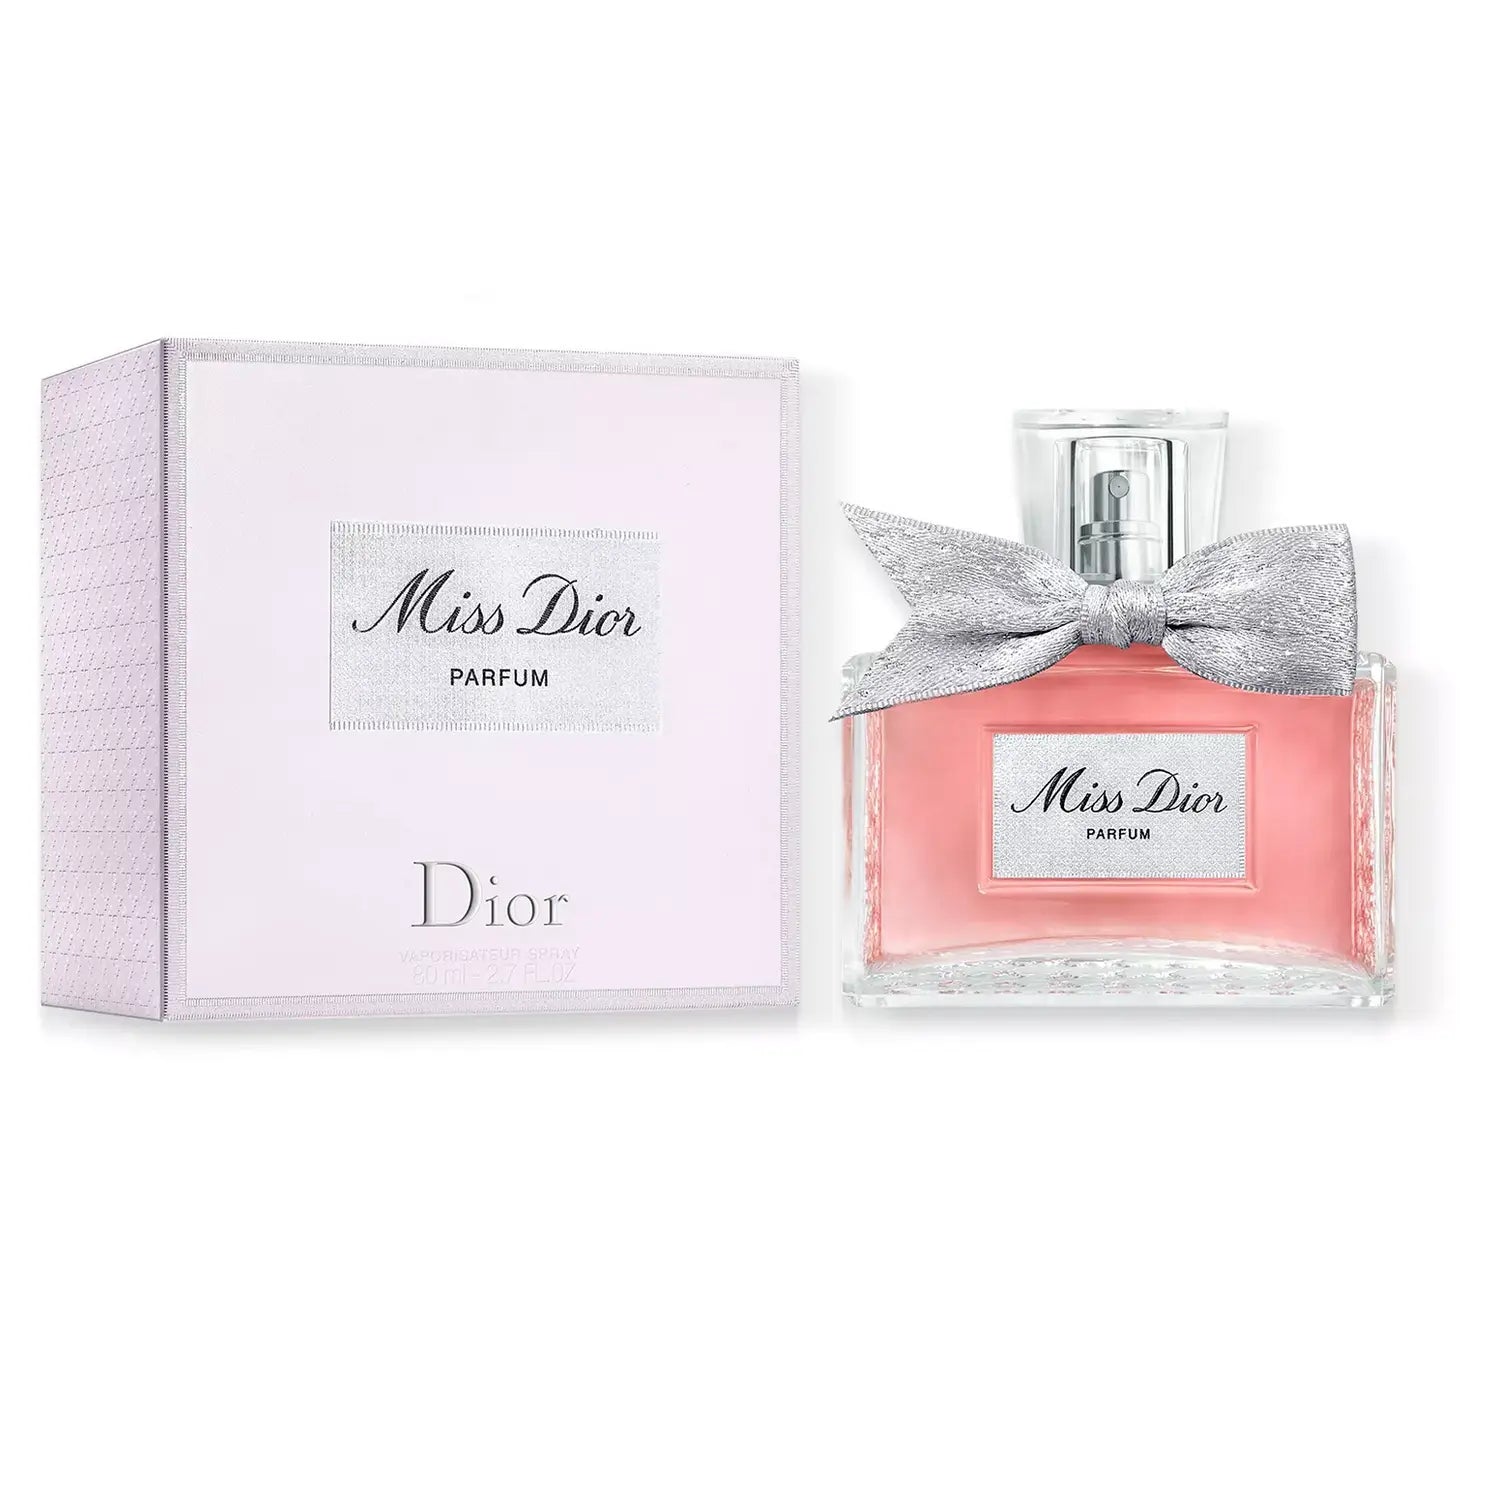 Miss Dior Parfum by Dior 2.7 oz Parfum Spray for Women